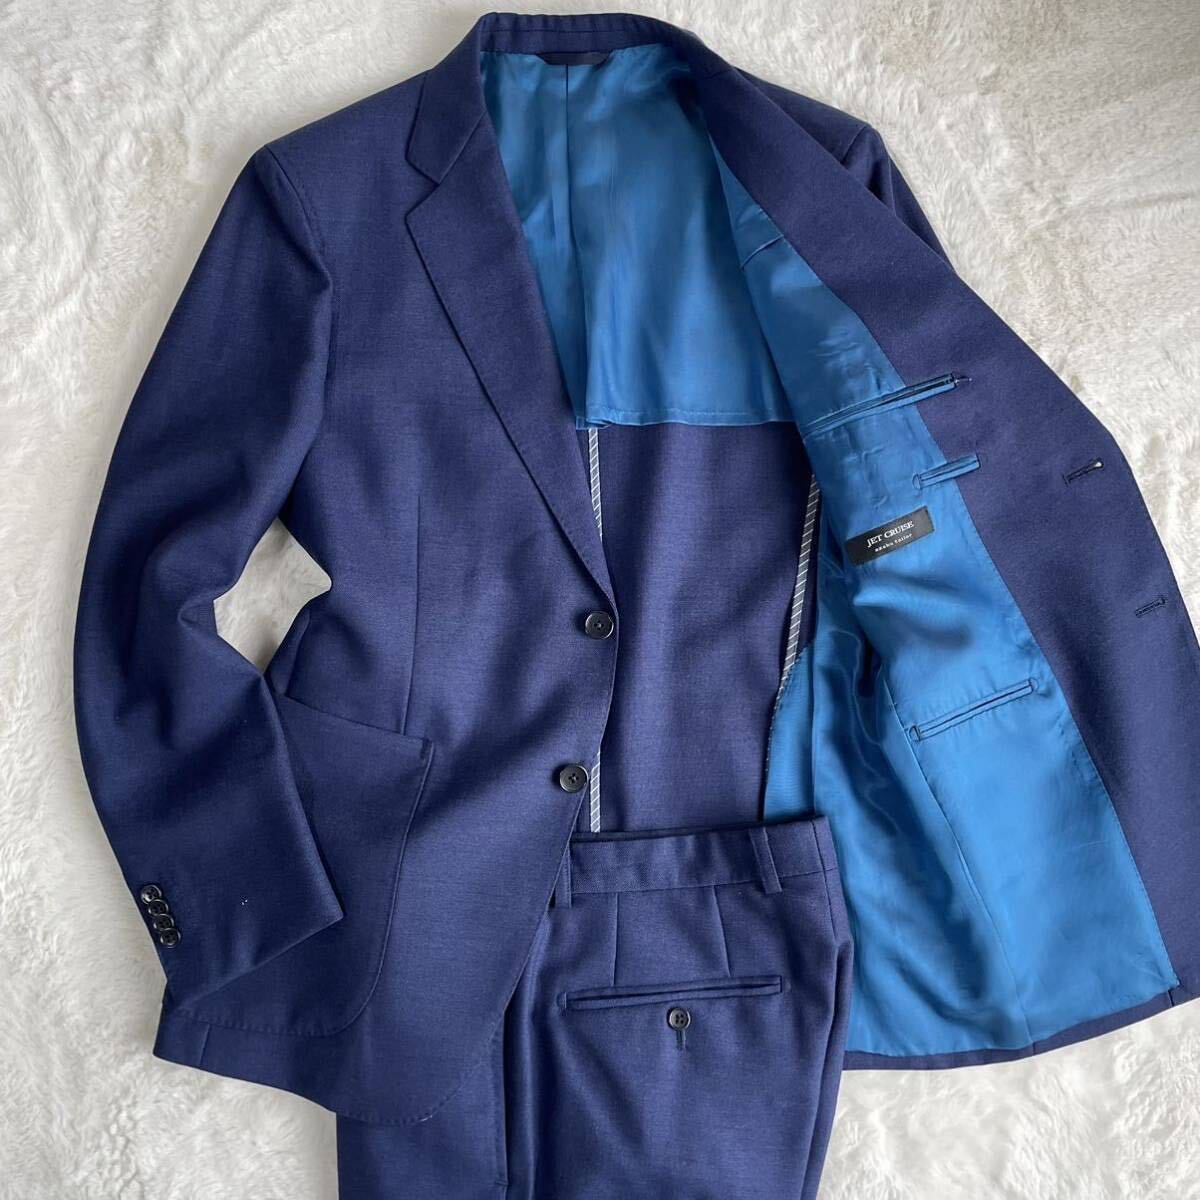 【極美品】azabu tailor 麻布テーラー スーツ 上下 セットアップ サイドベンツ 背抜き ブルー 青 ネイビー ウール 46(M) メンズ 日本製_画像1